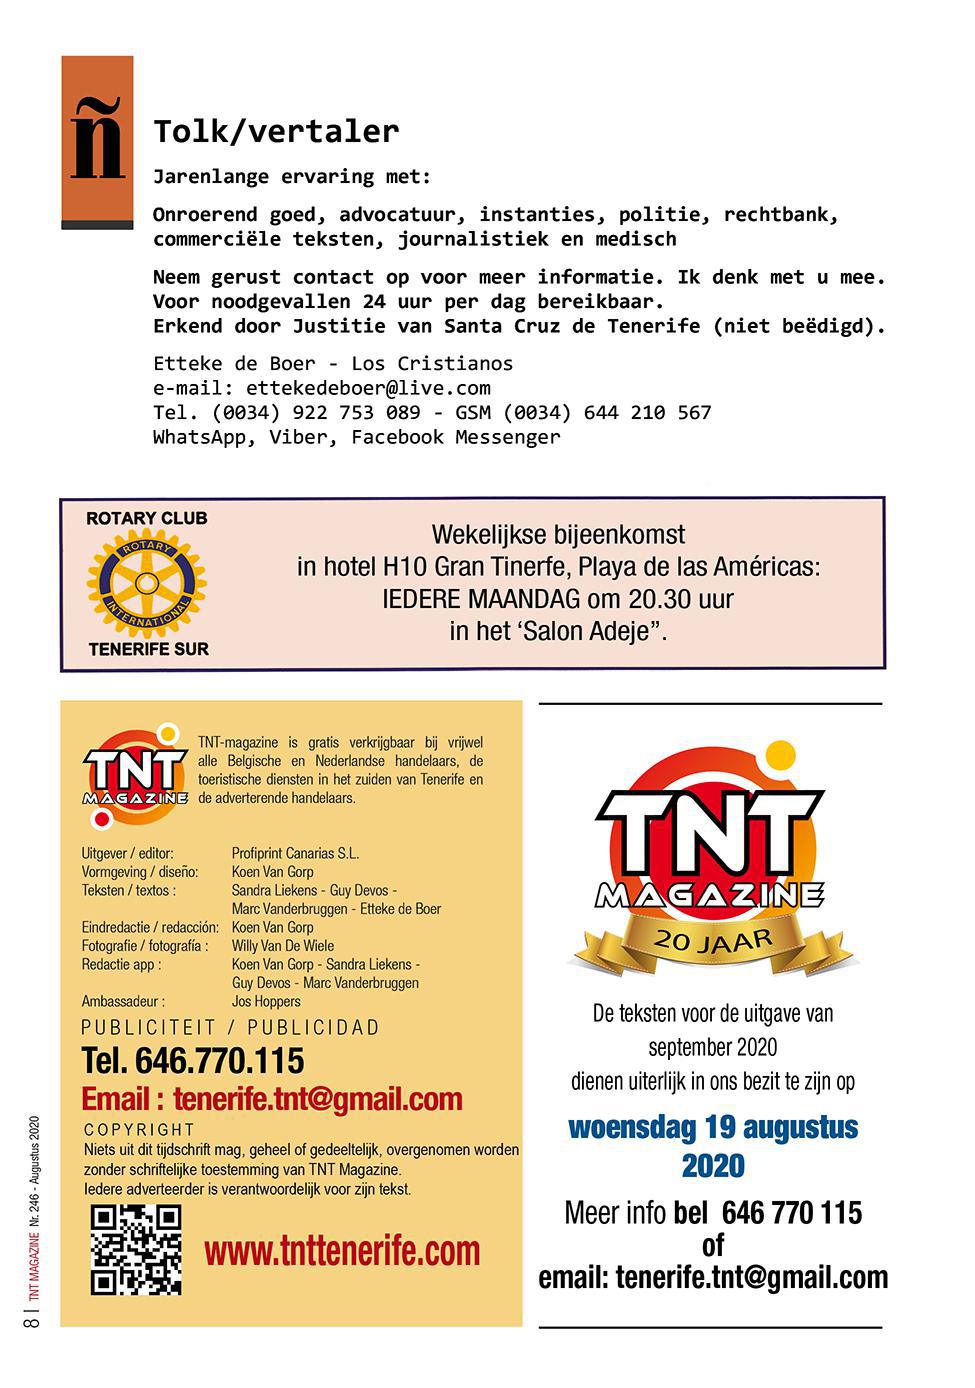 TNT Magazine - augustus 2020 - digitale versie